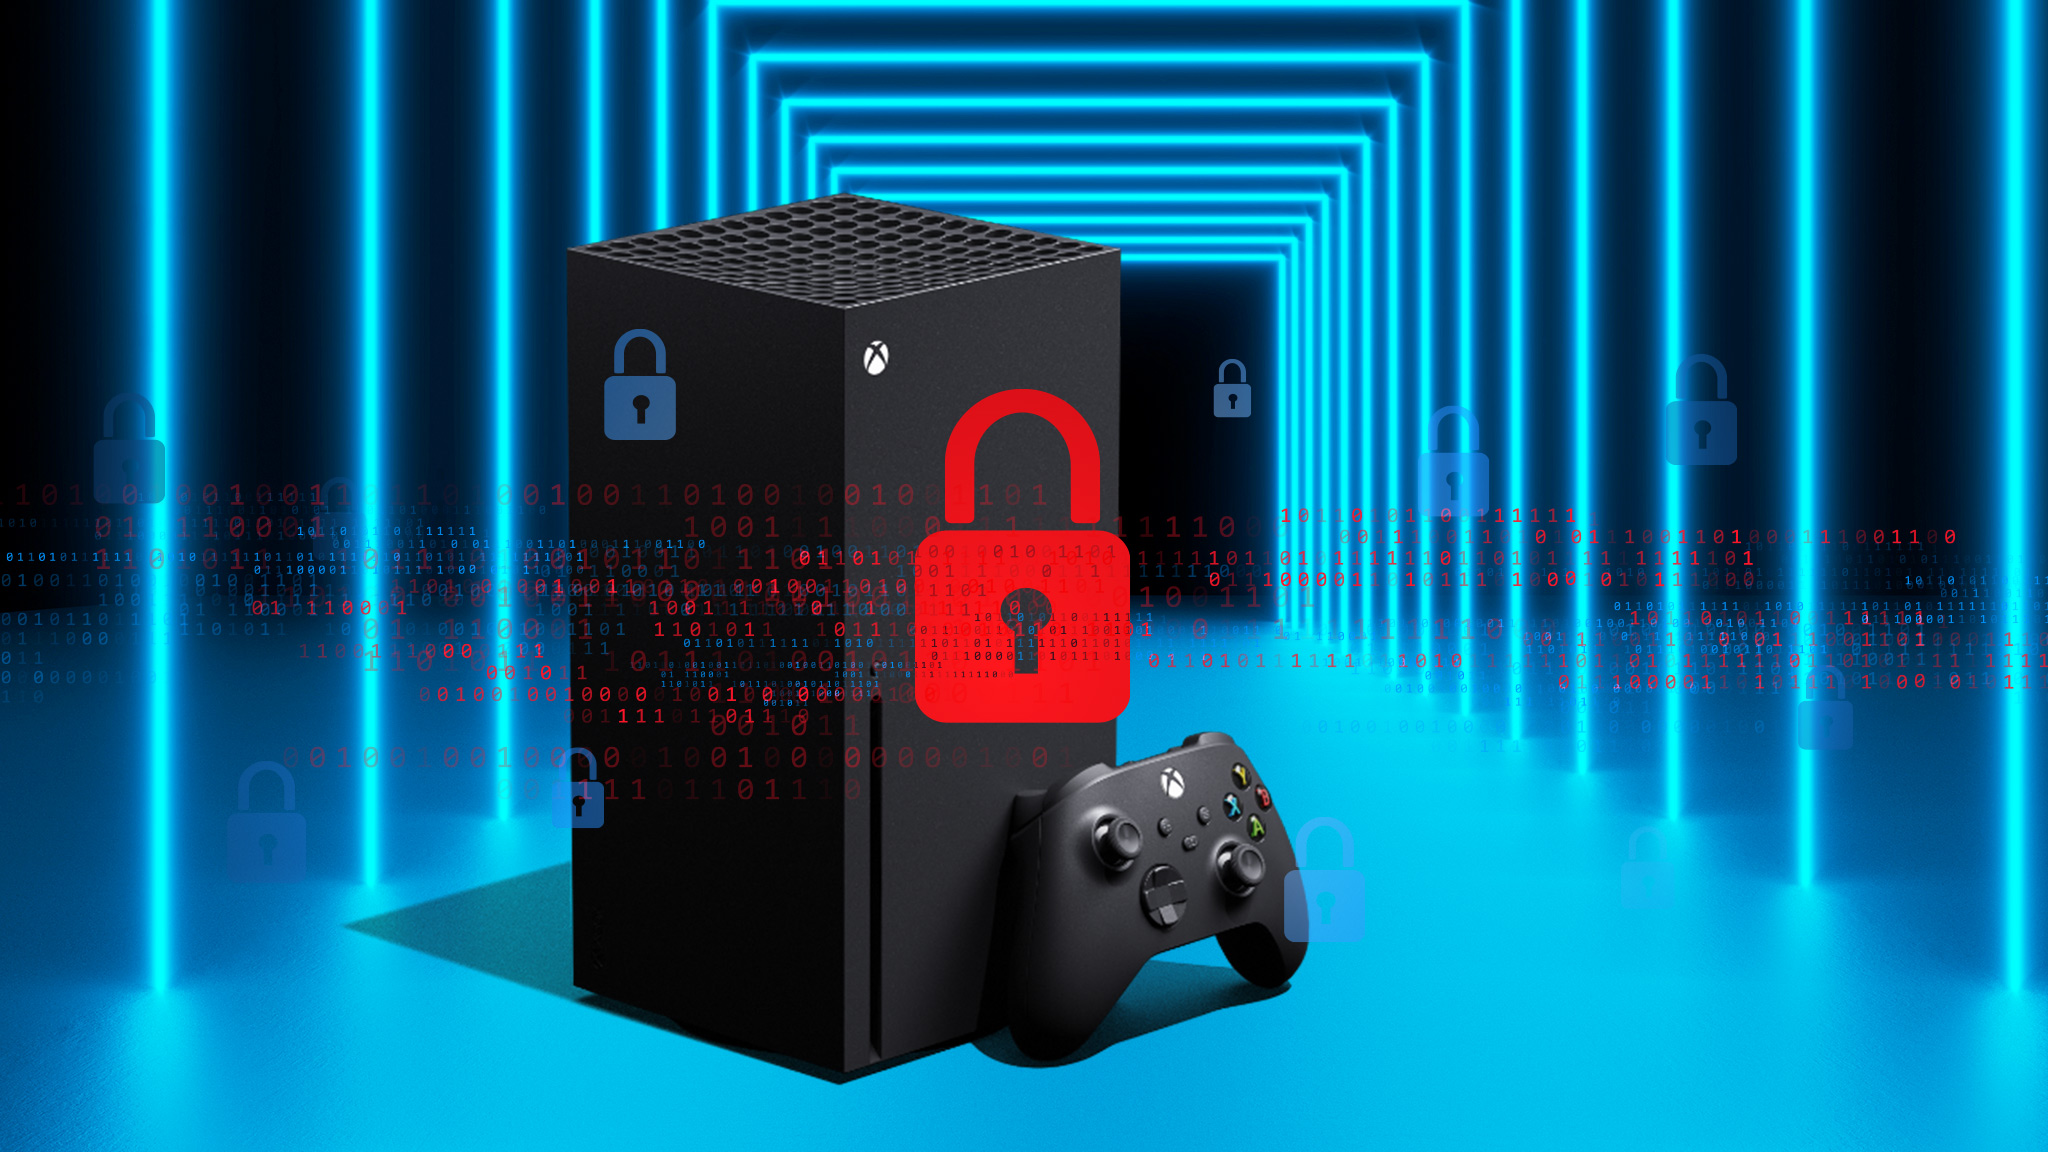 Ausgesperrt: Kein Zugriff auf Xbox nach Hackerangriff